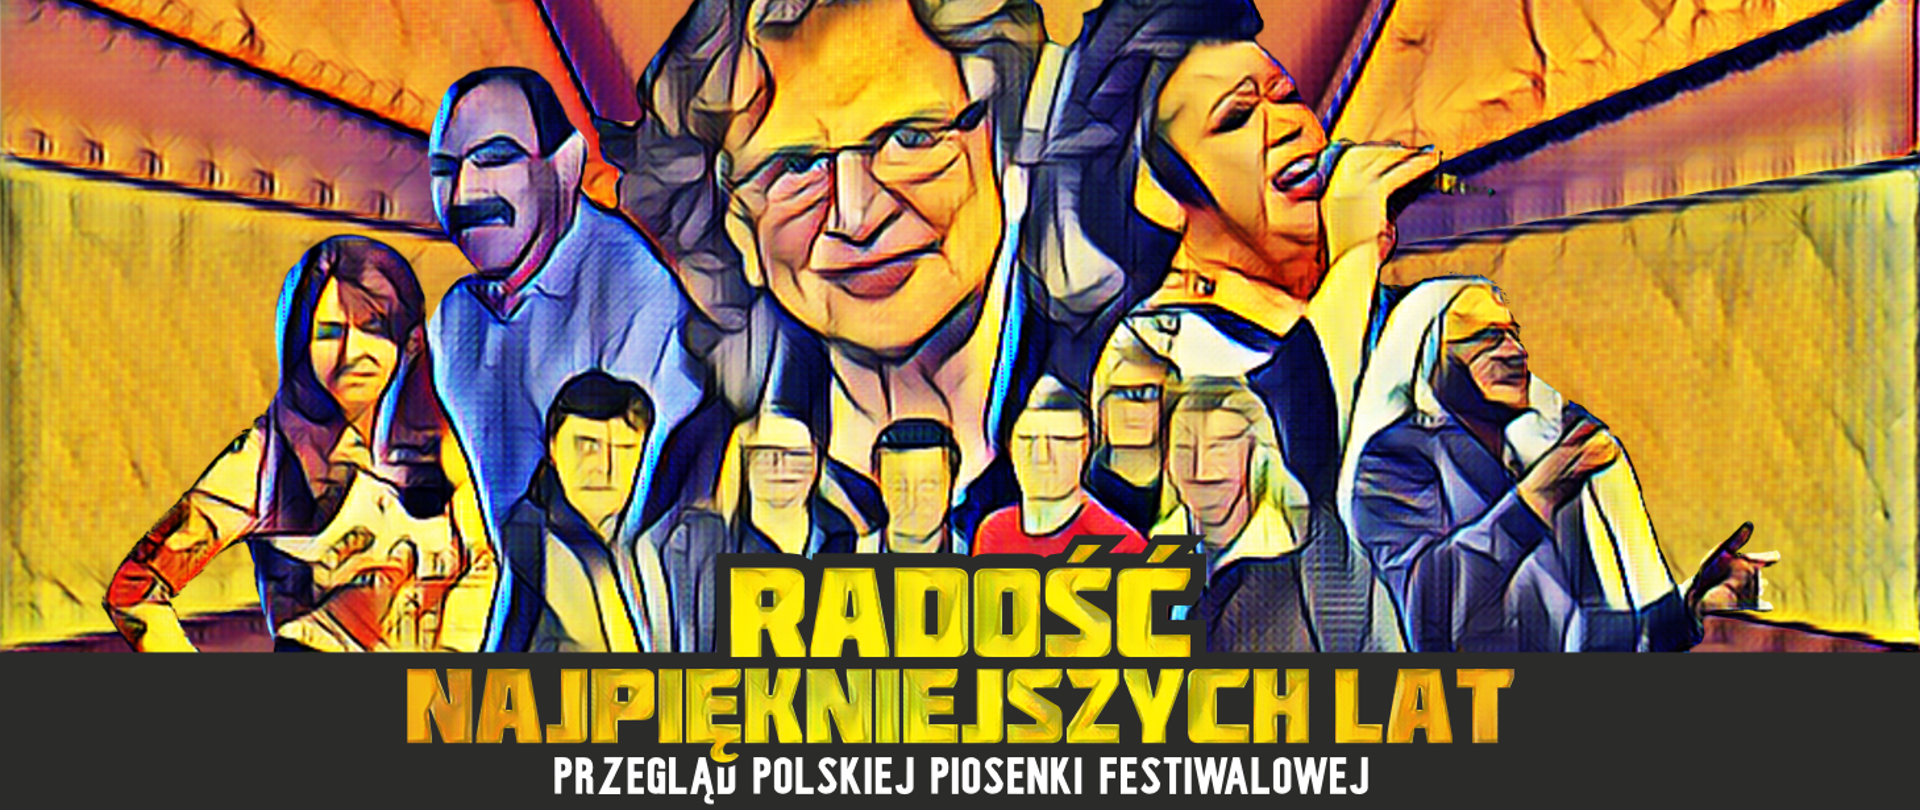 baner promujący koncert "Radość najpiękniejszych lat" z sylwetkami najwiekszych artystów polskiej piosenki kilku ostatnich dekad 